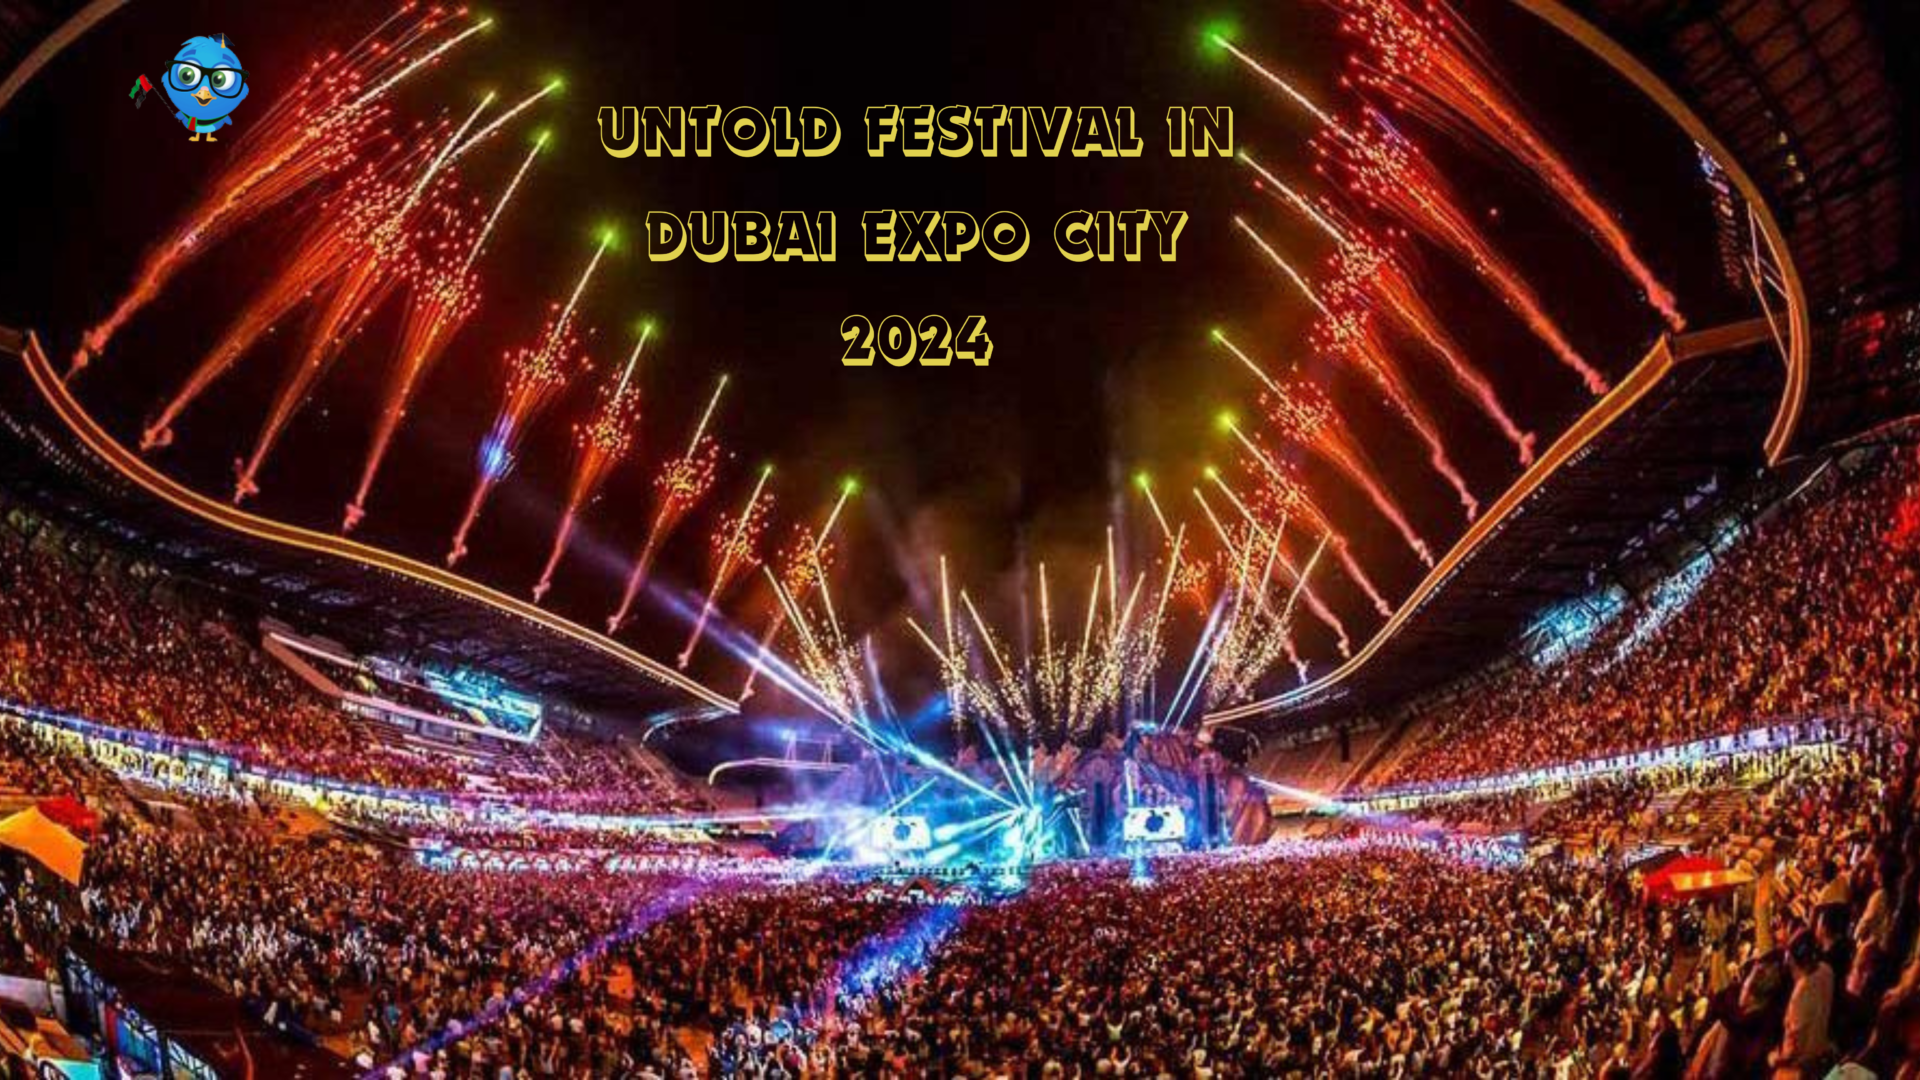 UNTOLD Festival in Dubai Expo City